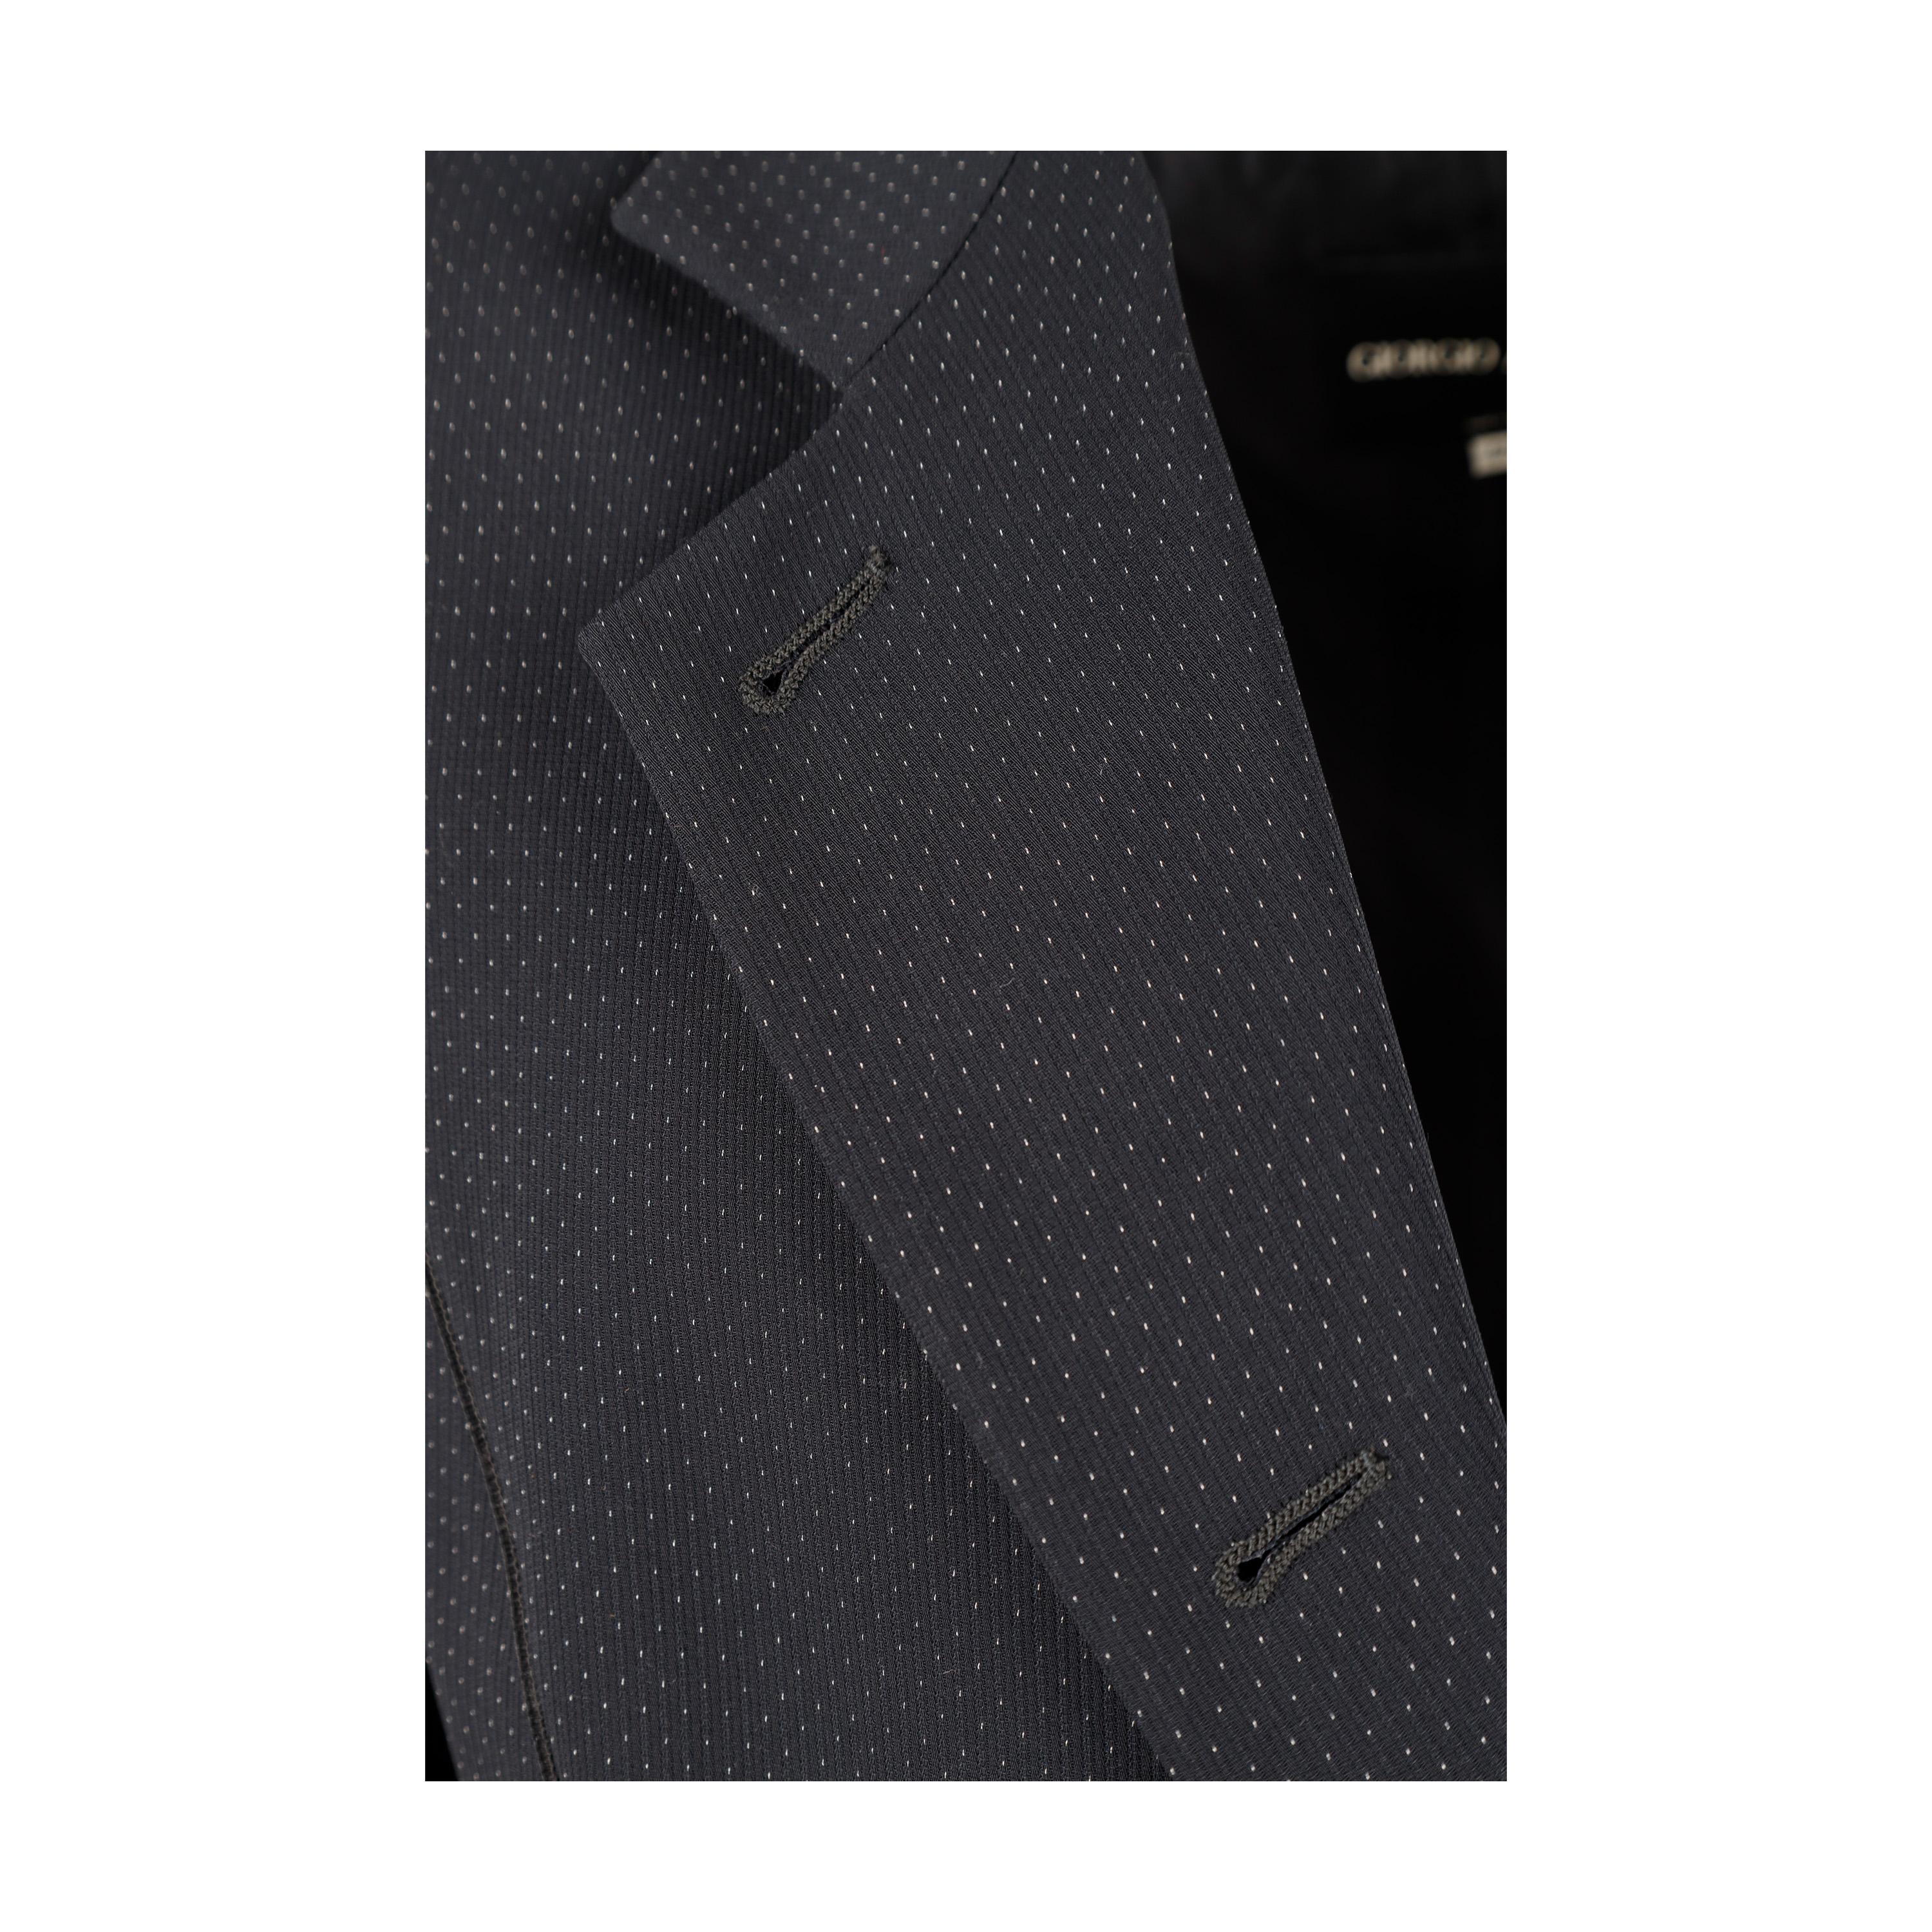 Giorgio Armani Borgo 21 Suit For Sale 4